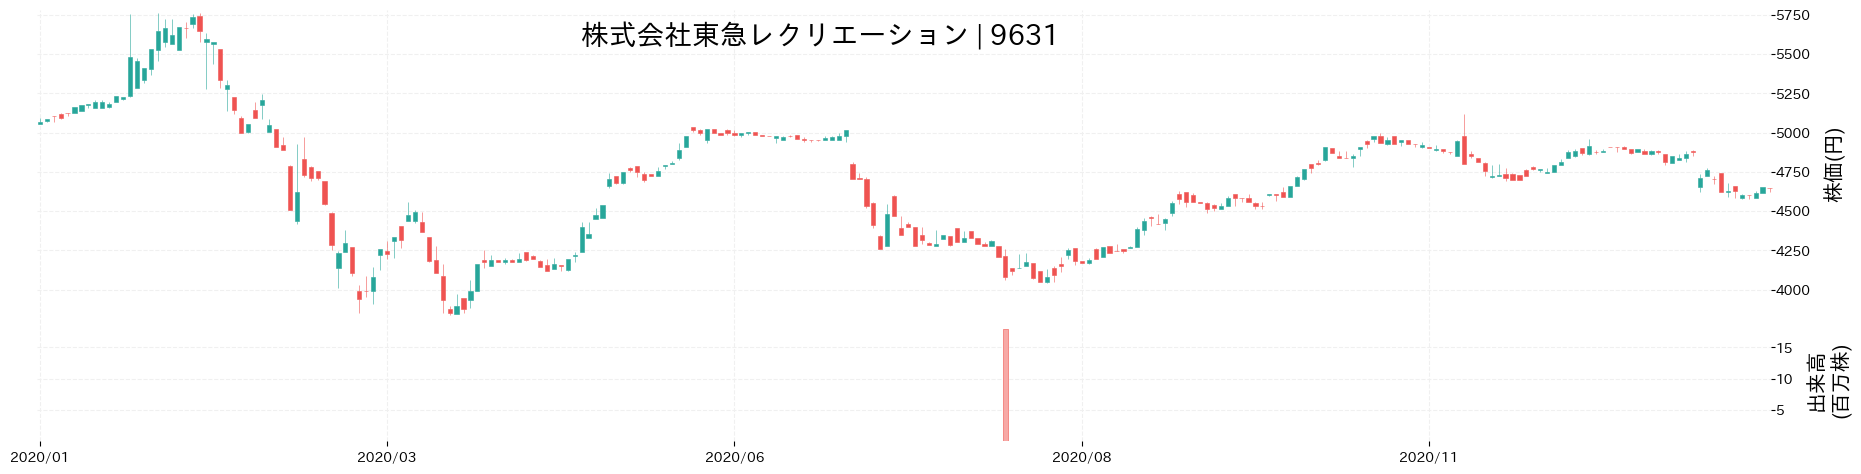 東急レクリエーションの株価推移(2020)